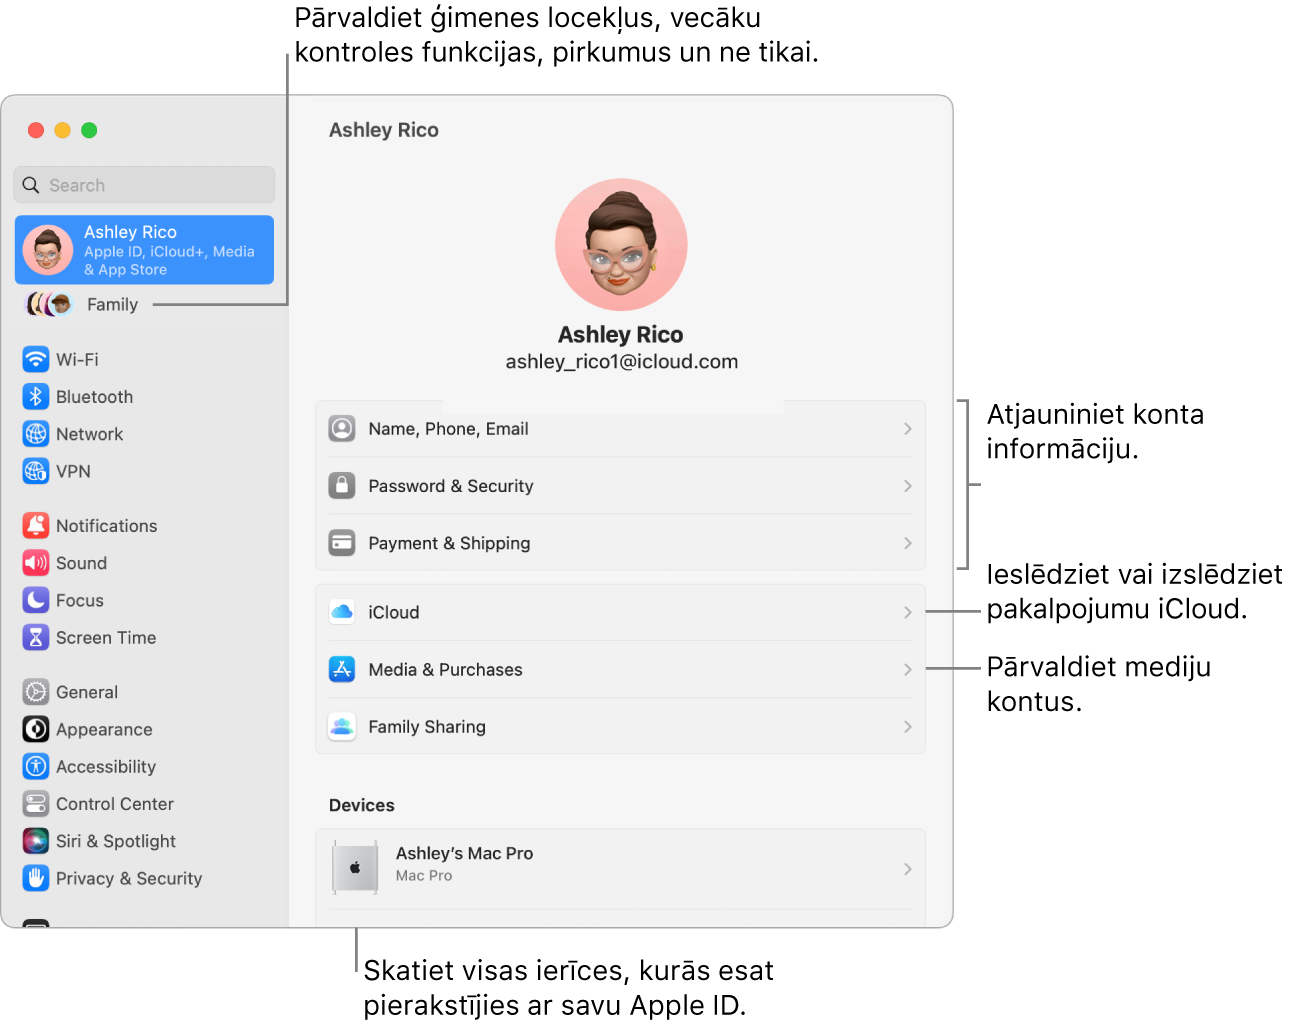 Apple ID rūts izvēlnē System Settings ar remarkām atjaunināt konta informāciju, ieslēgt vai izslēgt iCloud funkcijas, pārvaldīt sociālo tīklu kontus un sadaļu Family, kur varat pārvaldīt ģimenes locekļus, vecāku kontroles funkcijas, pirkumus un ne tikai.